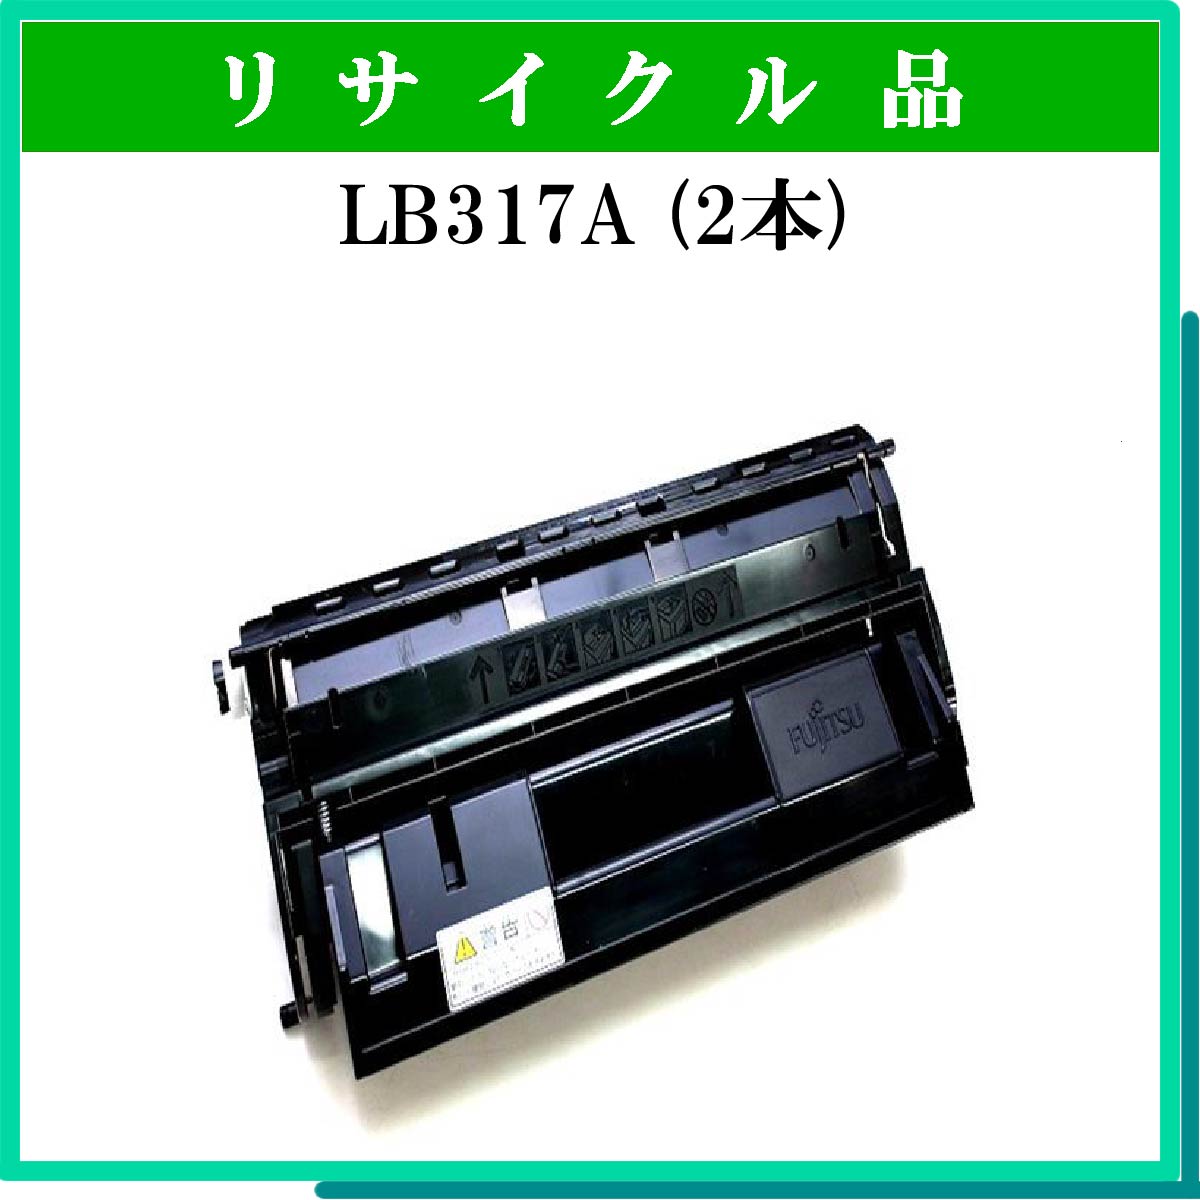 LB317A (2本ｾｯﾄ) [LB317A(2本セット)] - 7,700円 : トナー・リサイクルトナー通販はブルースカイネット： リサイクルトナー 専門店